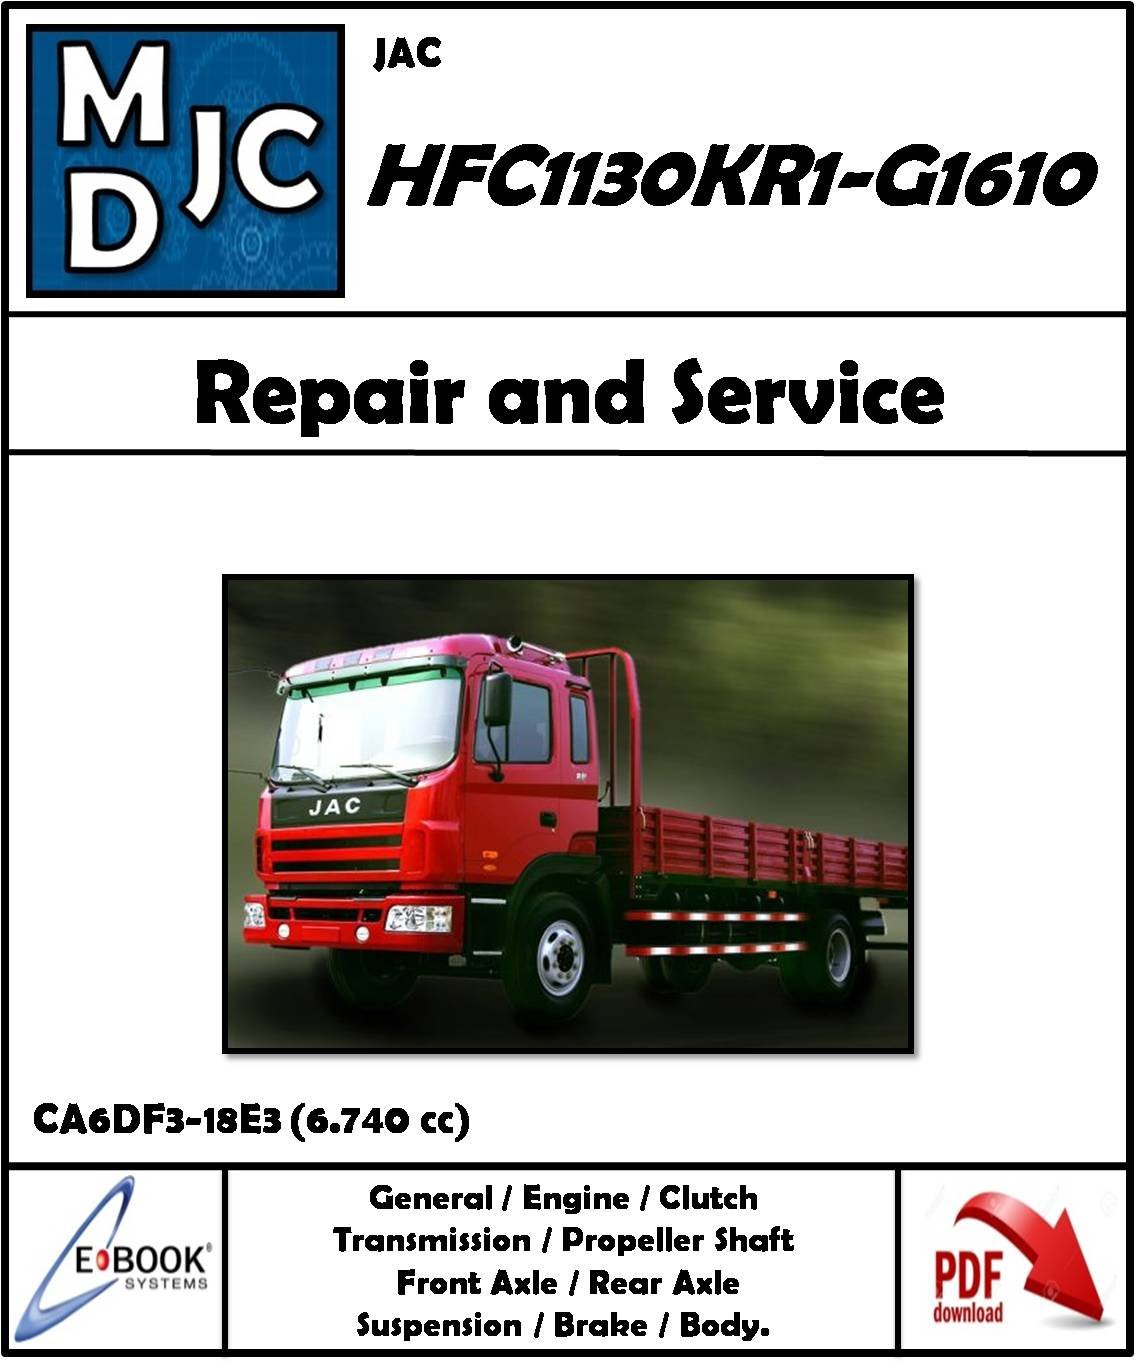 JAC  HFC1130KR1-G1610